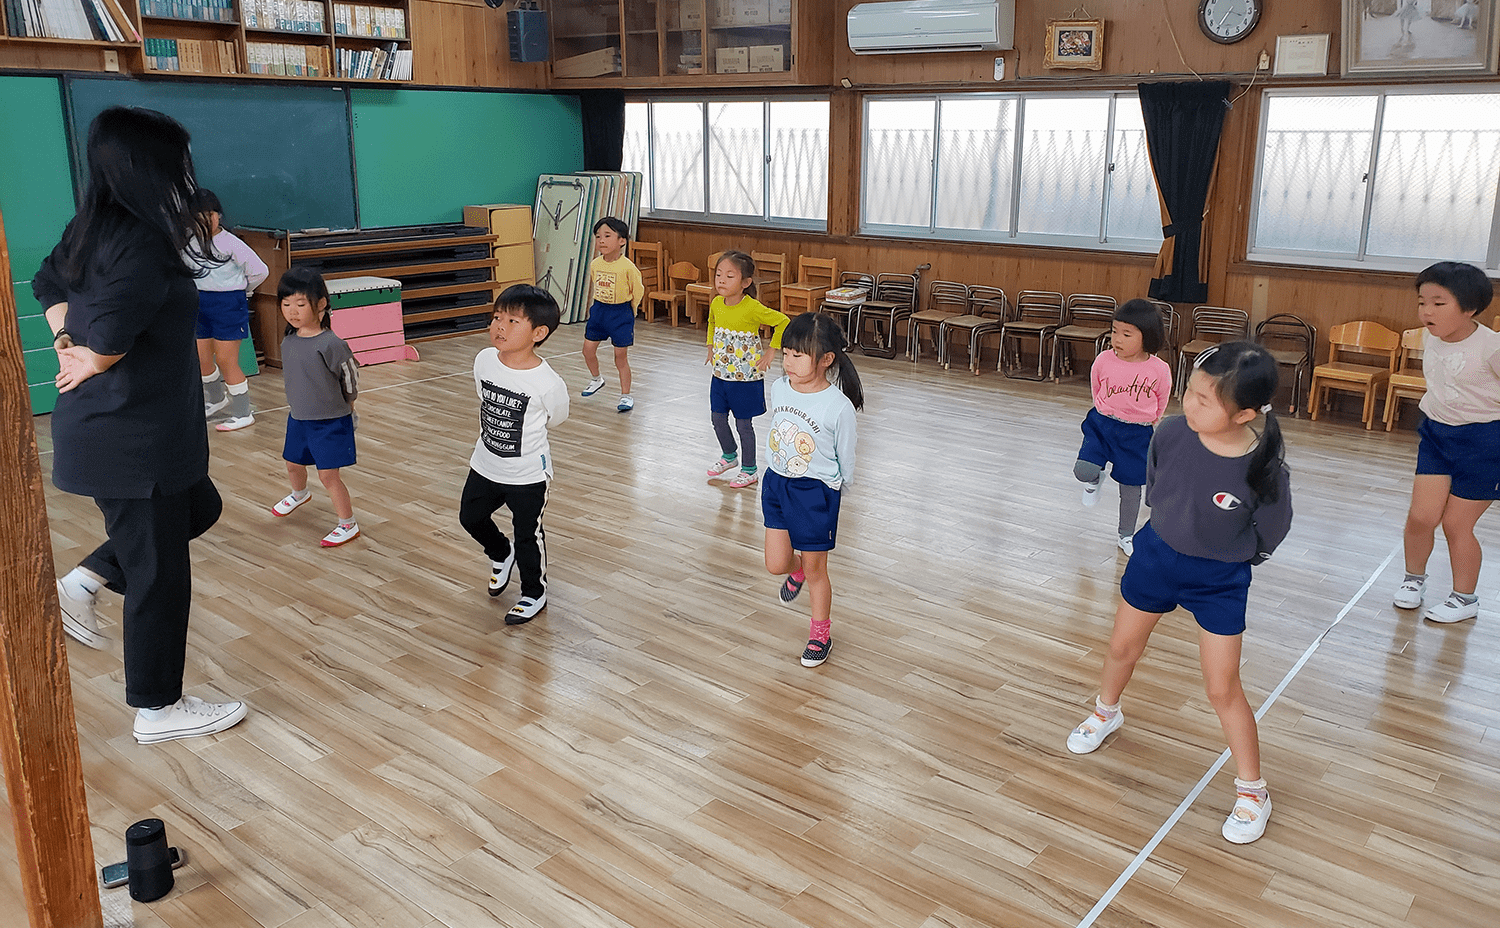 ダンス教室